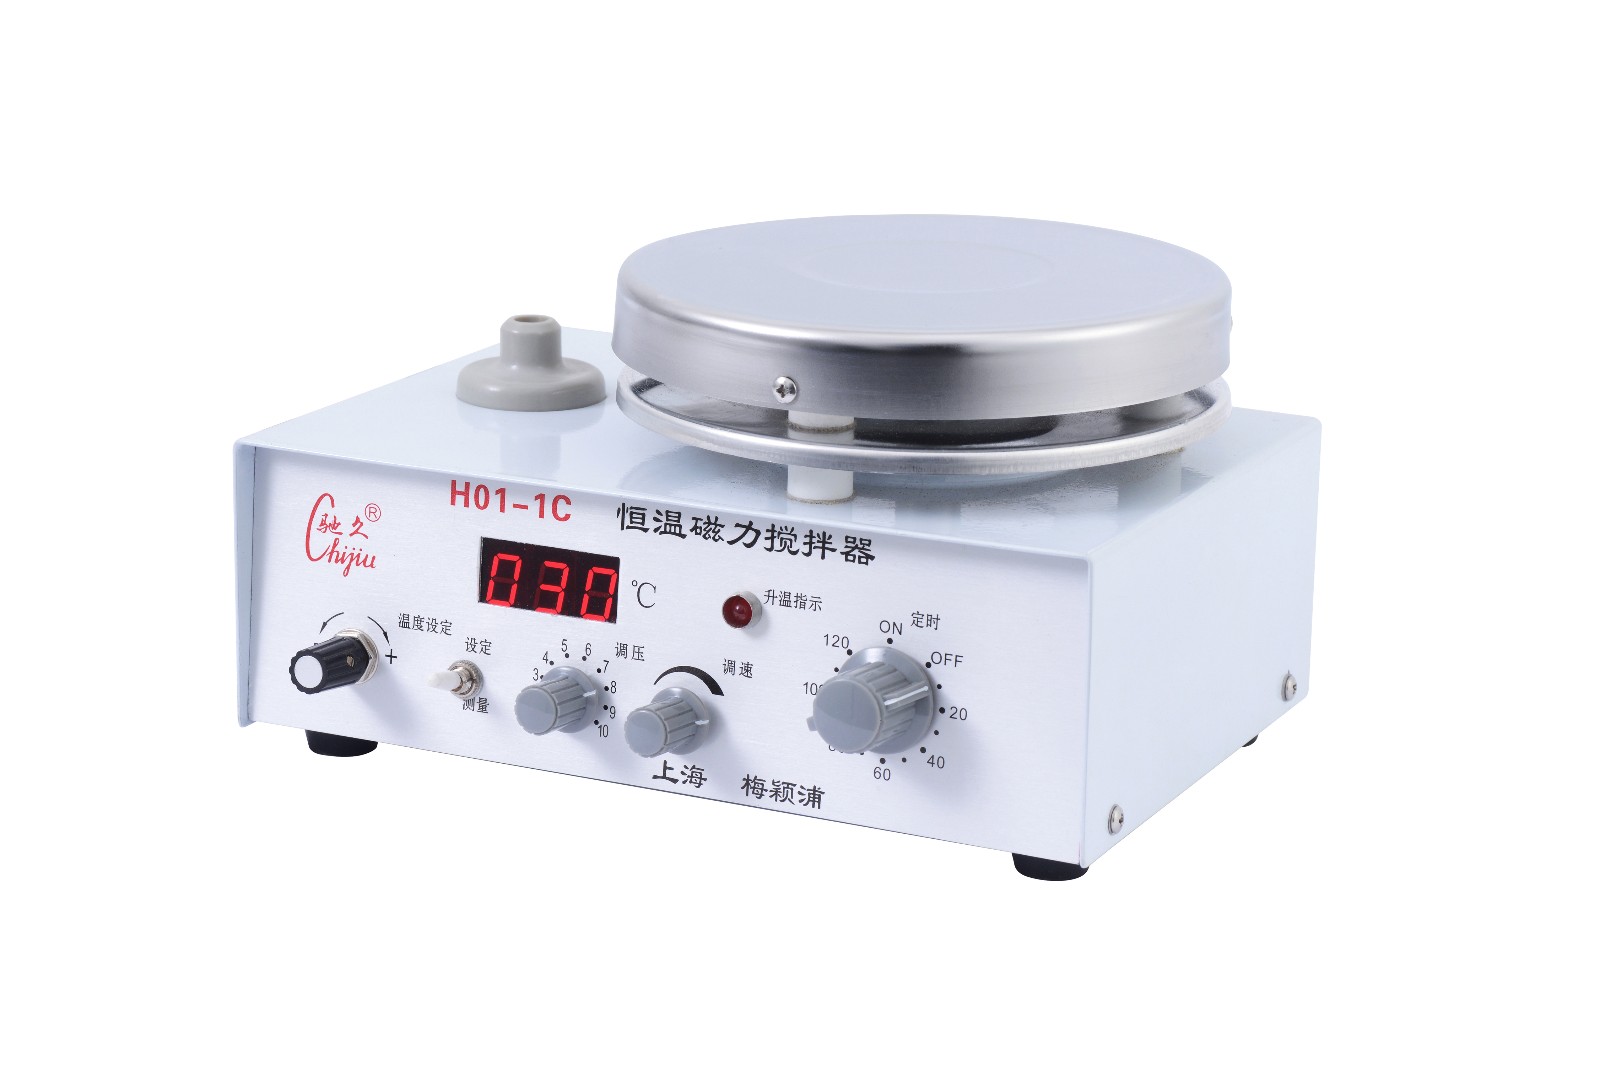 梅颖浦磁力搅拌器H01-1C